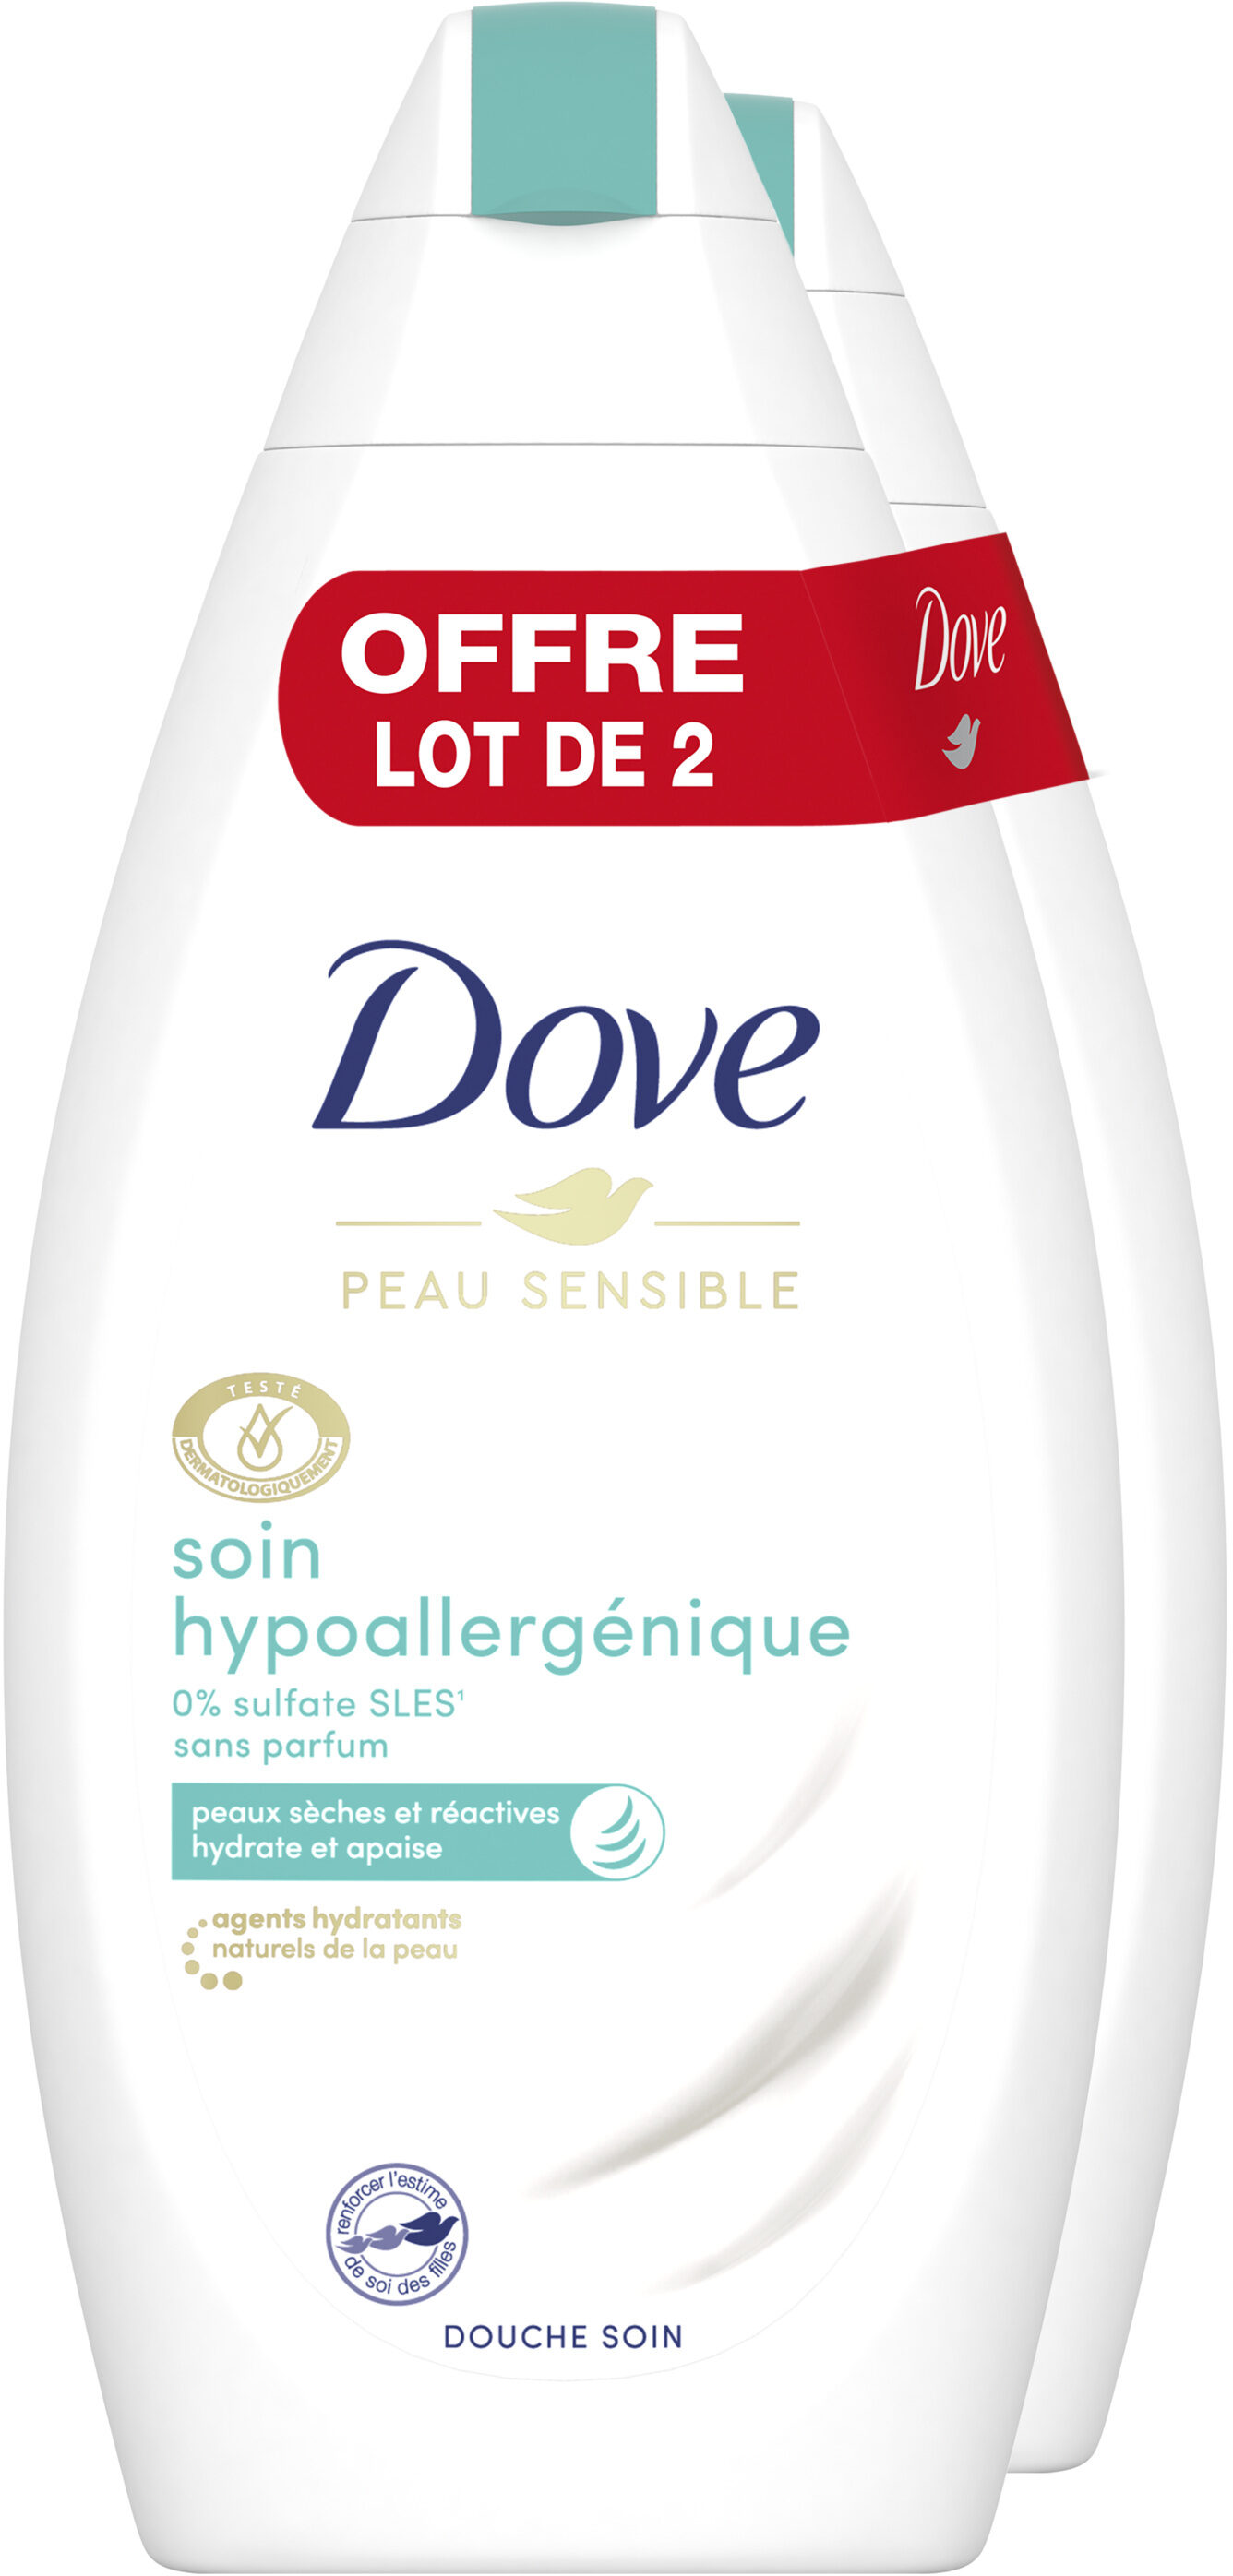 Dove Gel Douche Soin Hypoallergénique 400ml Lot de 2 - Product - fr